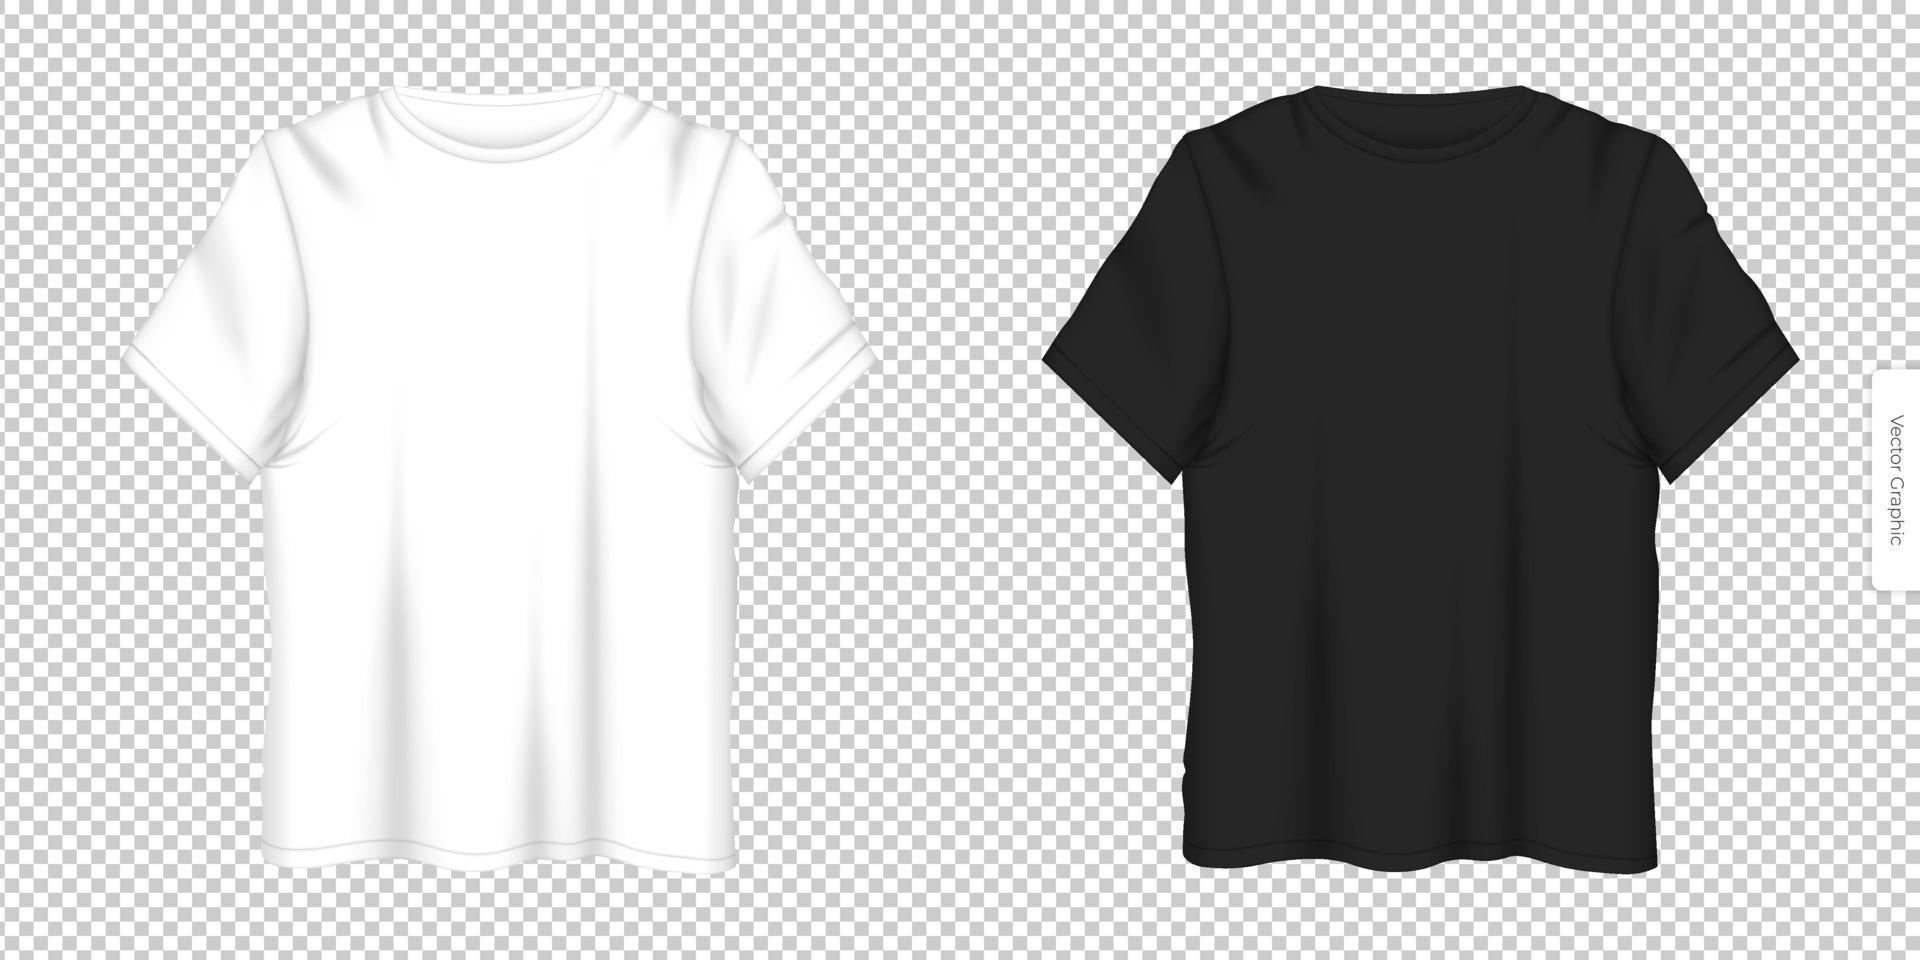 ilustración vectorial realista diseño de camisetas esp 10, conjunto vectorial de diseños de camisetas blancos y negros con vista frontal solución universal para publicidad de ropa de moda para hombres y mujeres vector